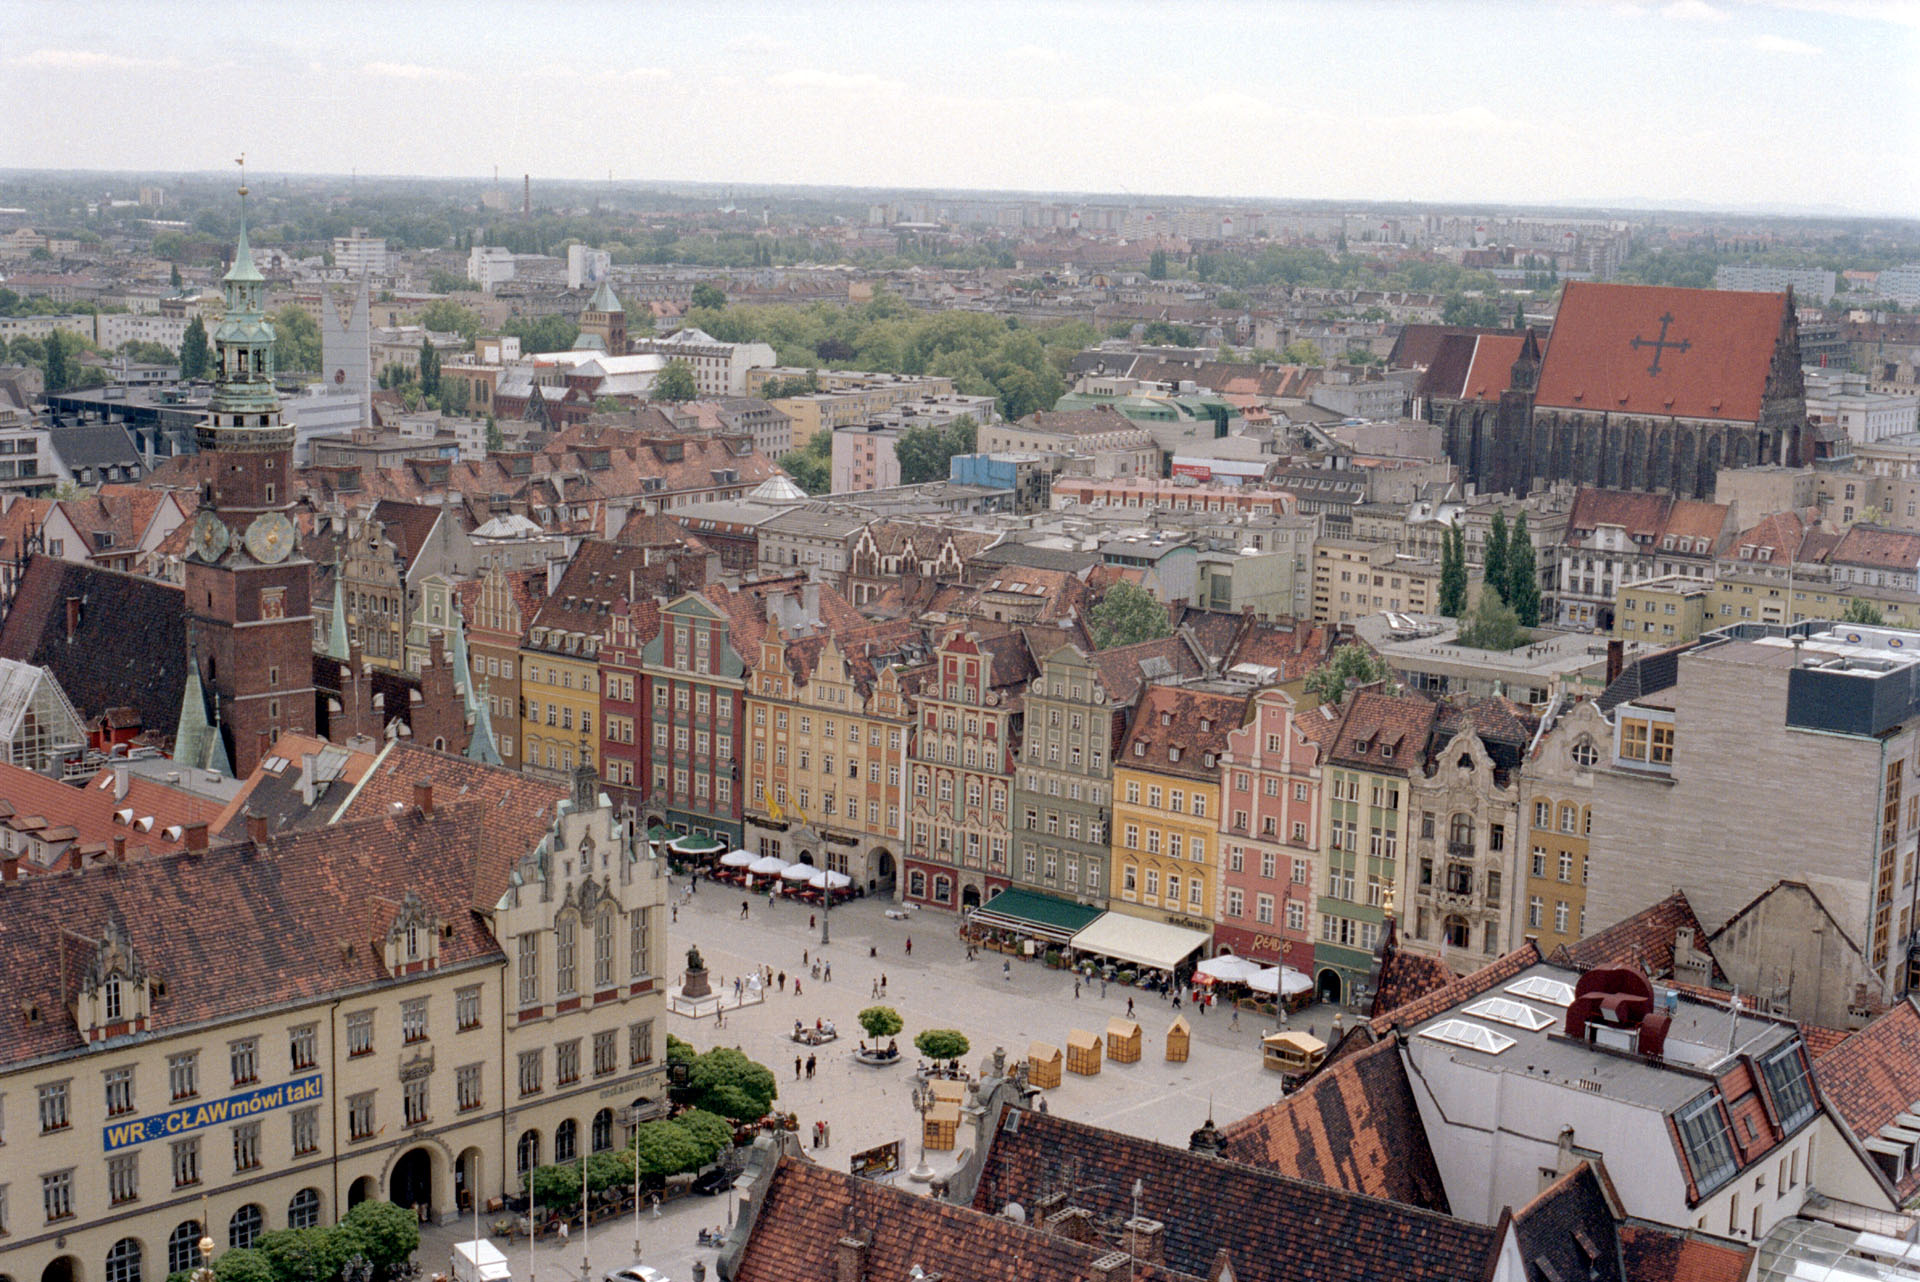 Wrocław - Poland